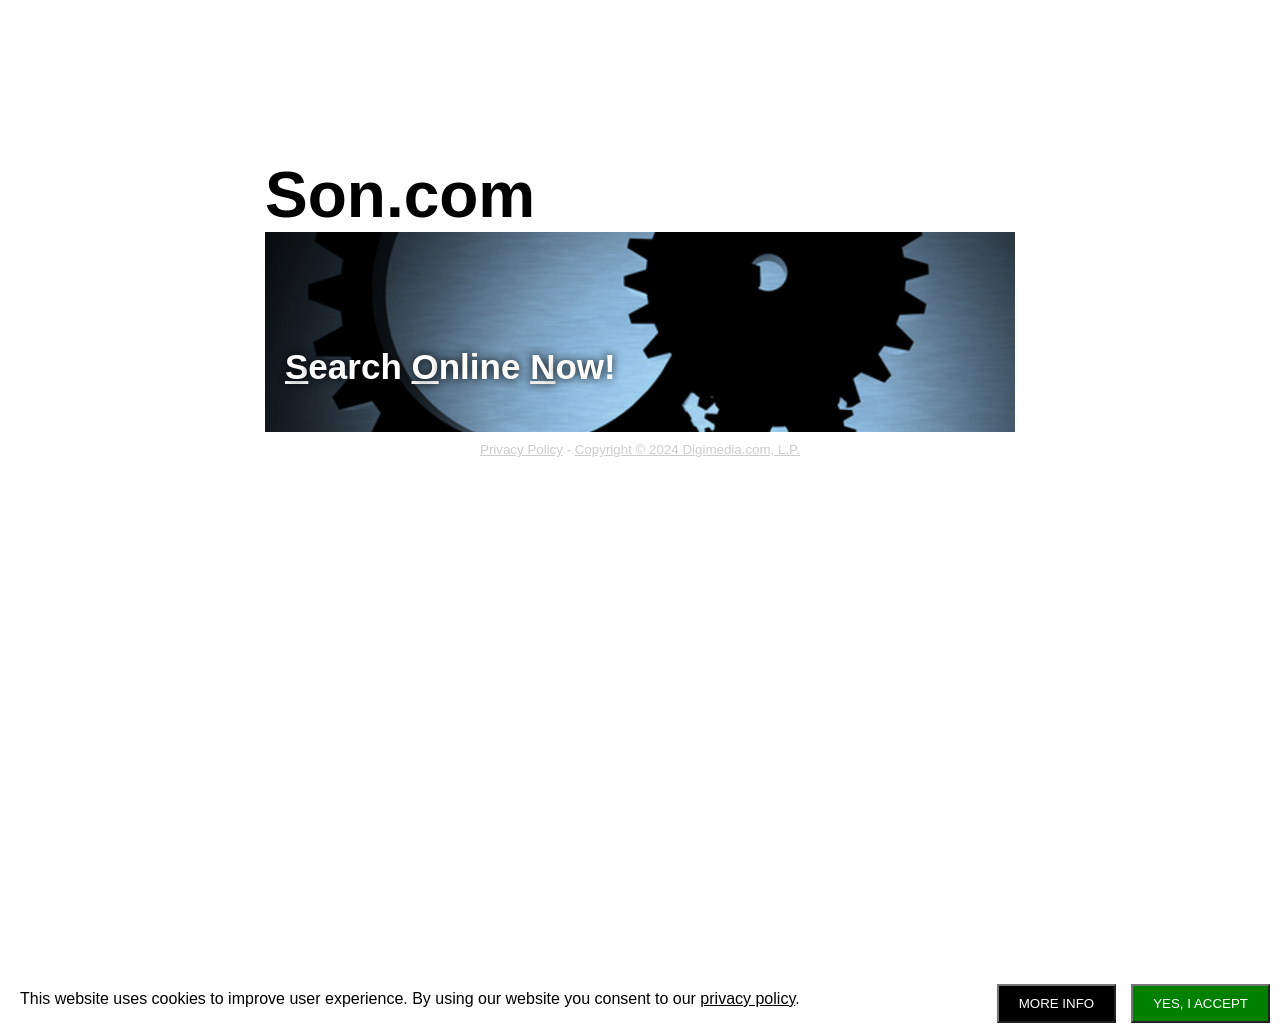 son.com